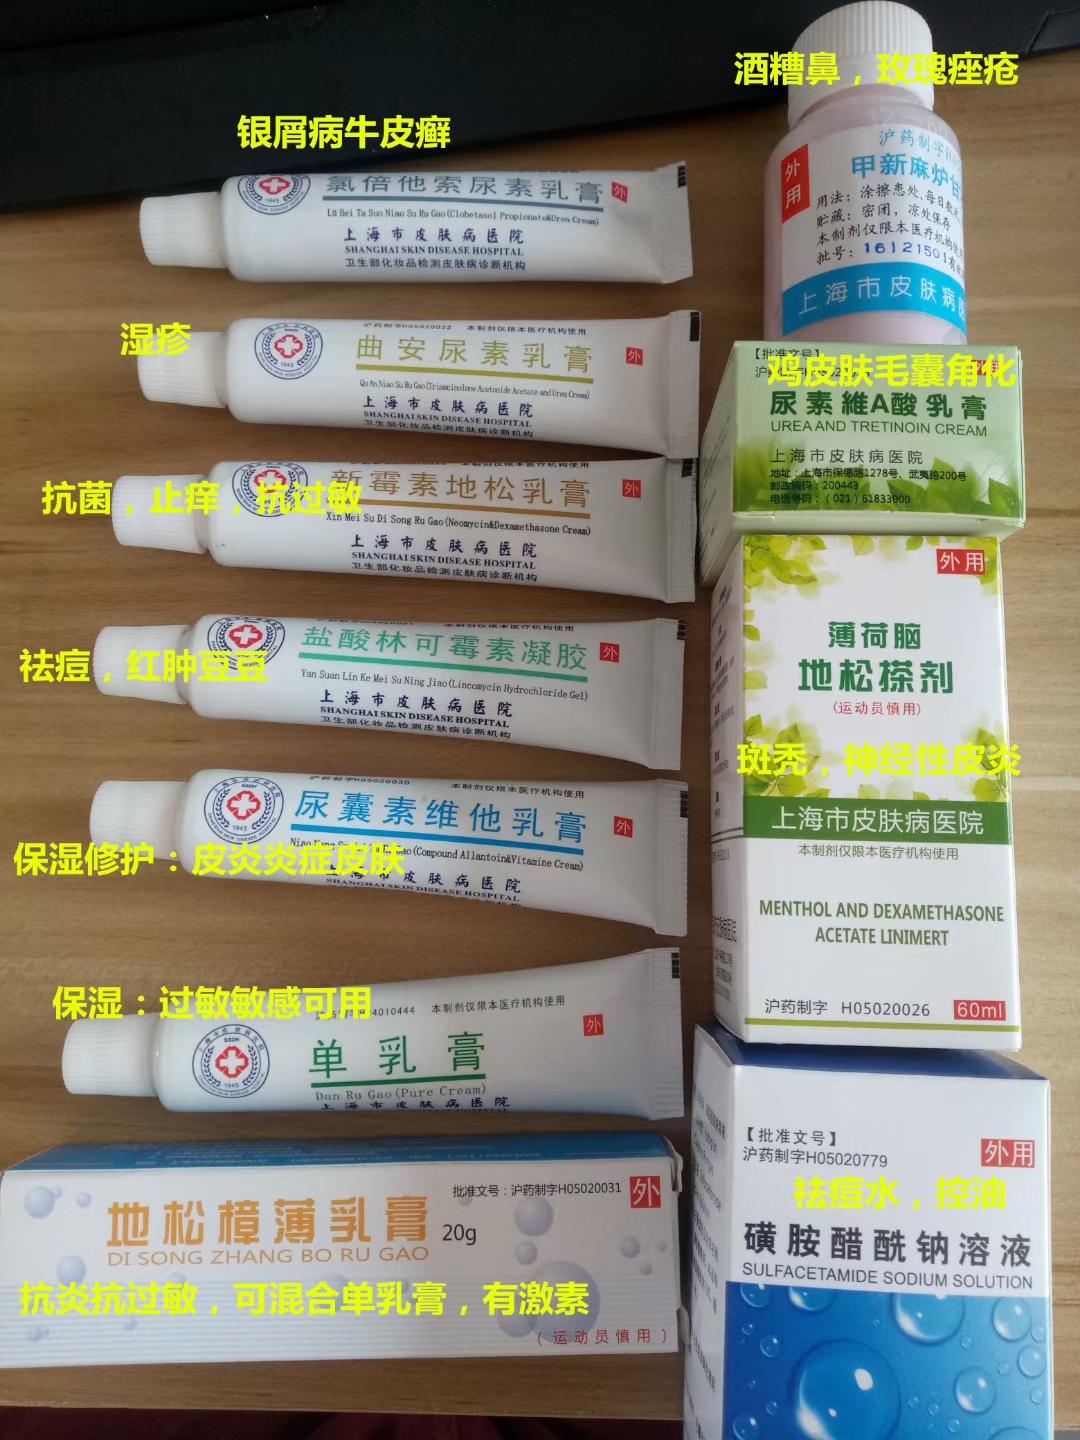 上海市皮肤病医院盐酸林可霉素凝胶怎么买